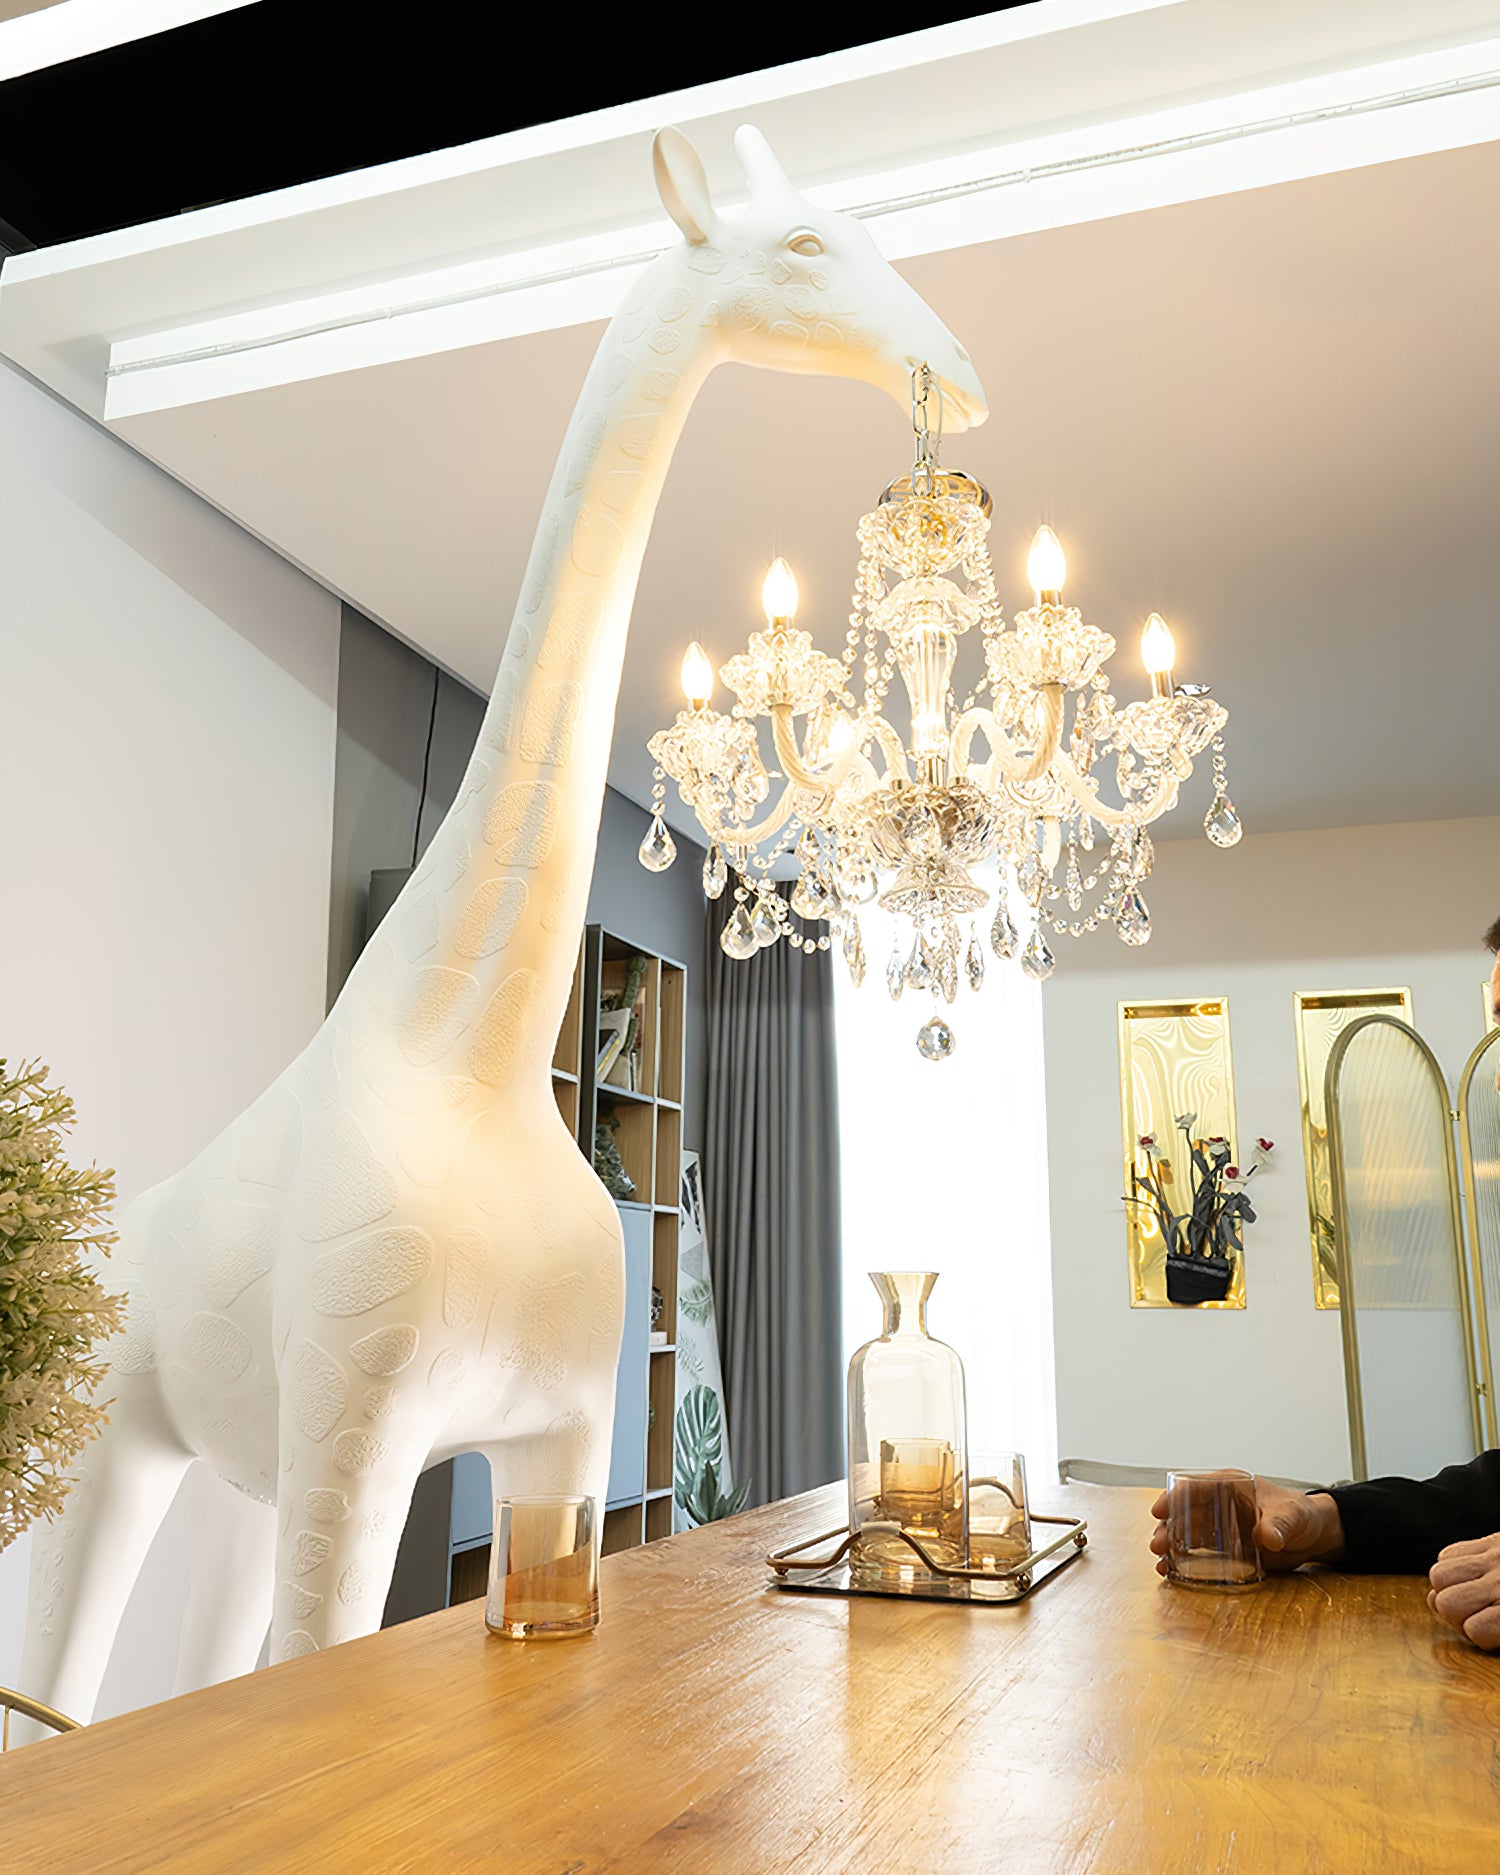 Giraffe Sculpture Floor Lamp